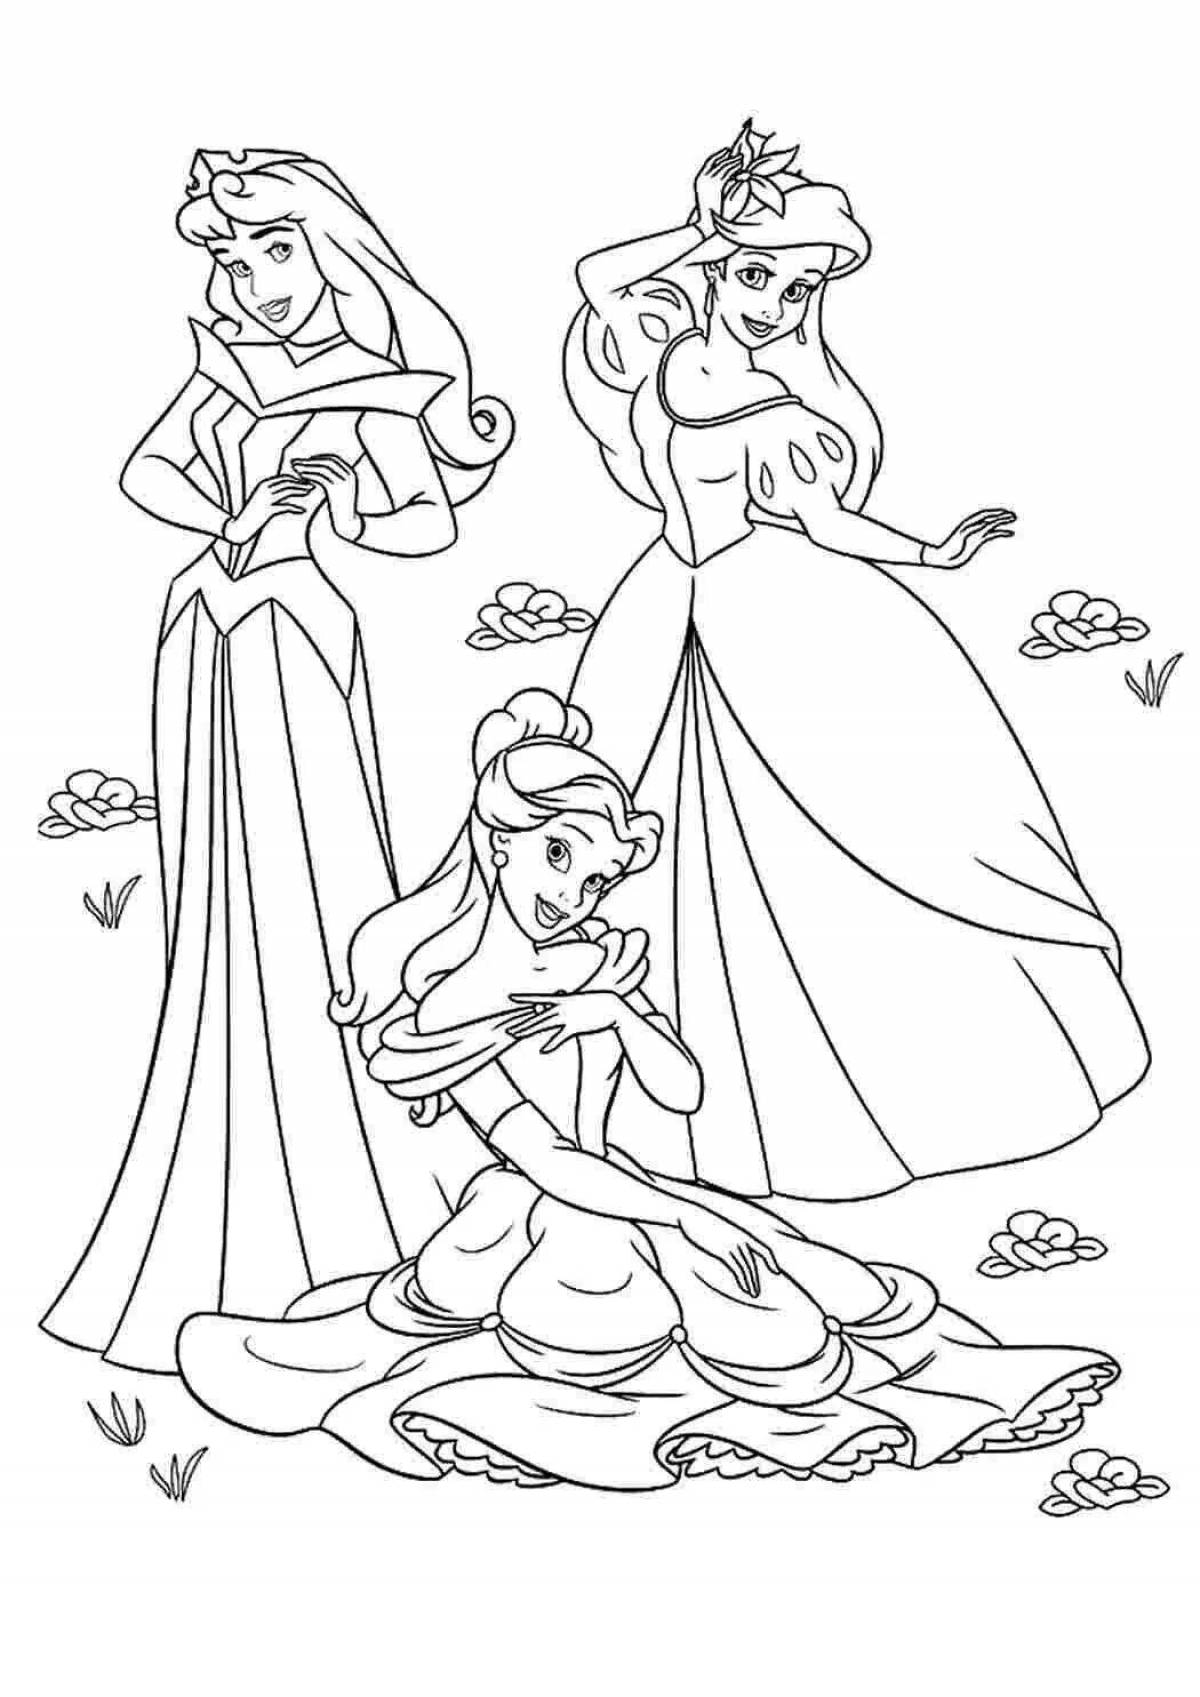 Generous coloring of all disney princesses